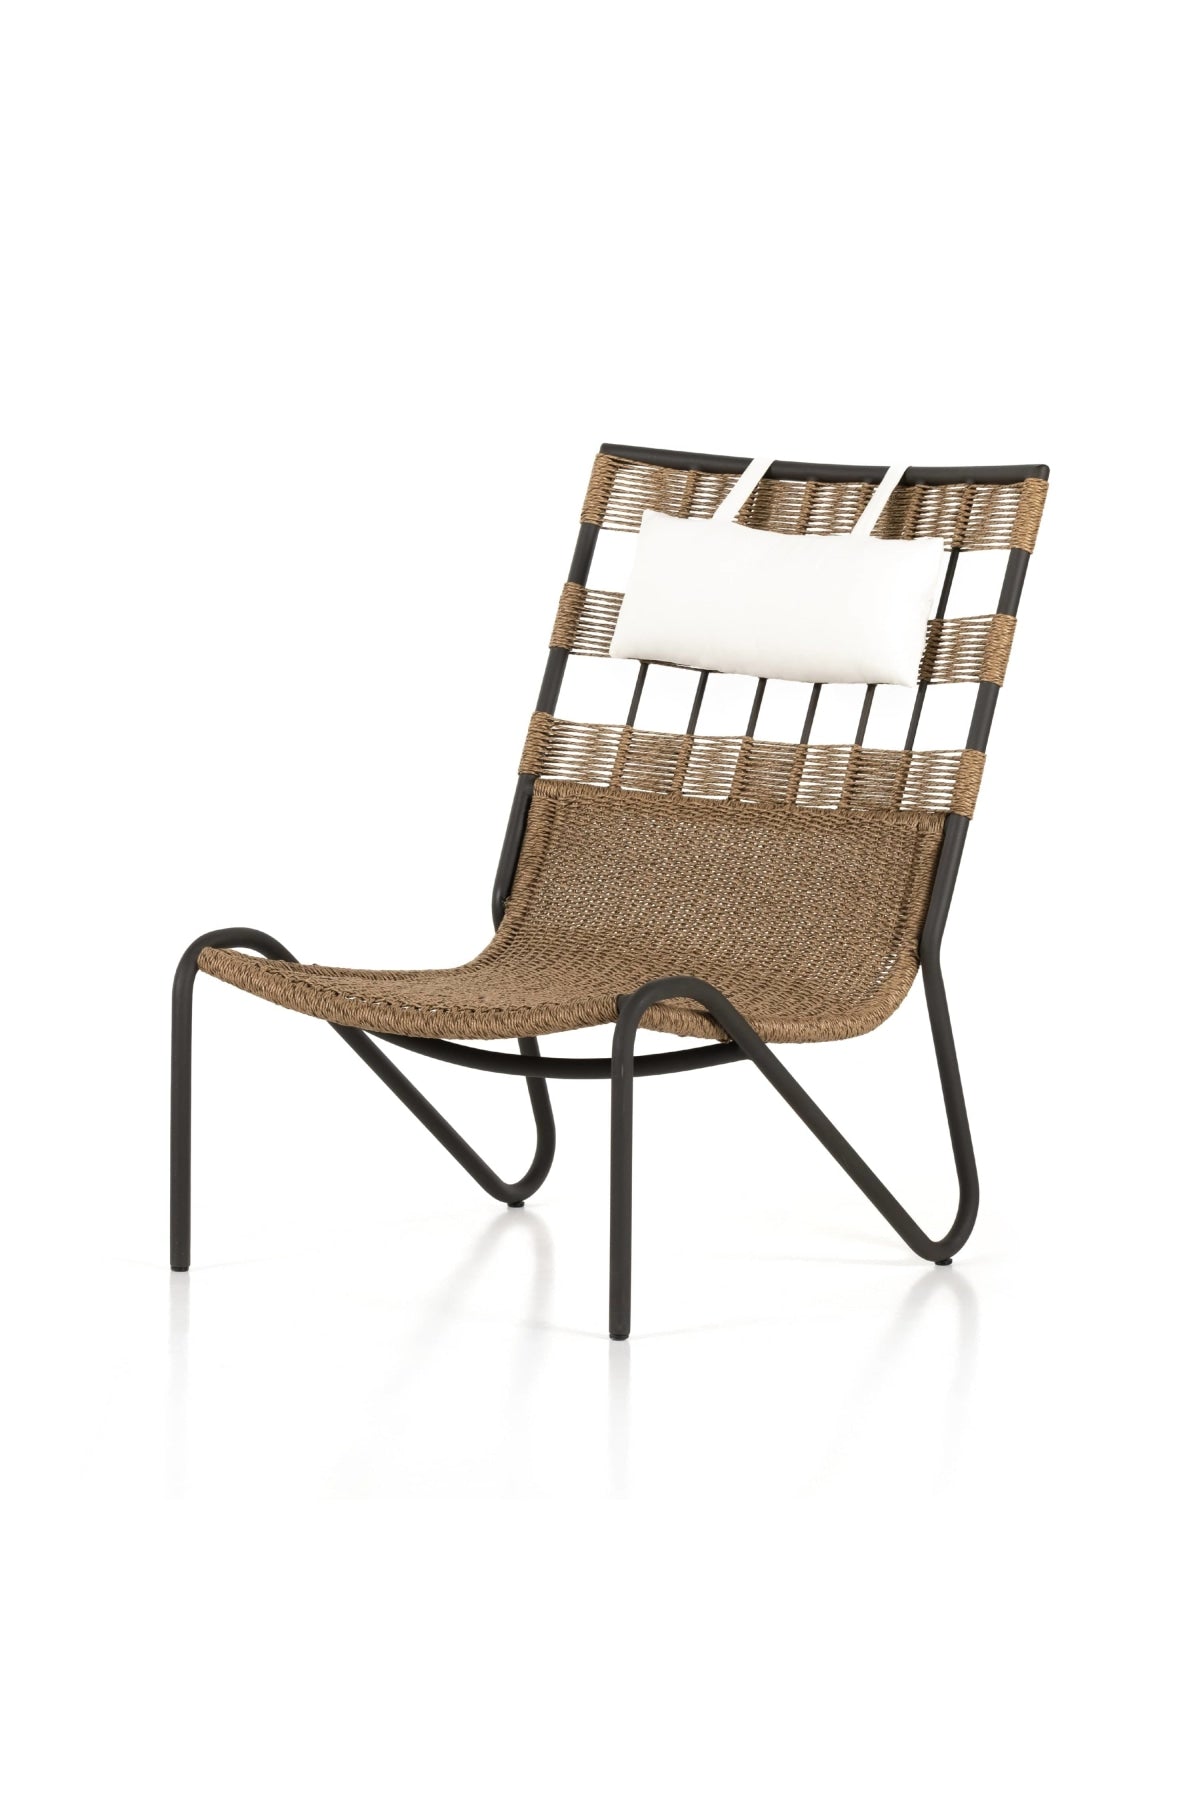 Avon Outdoor Chair